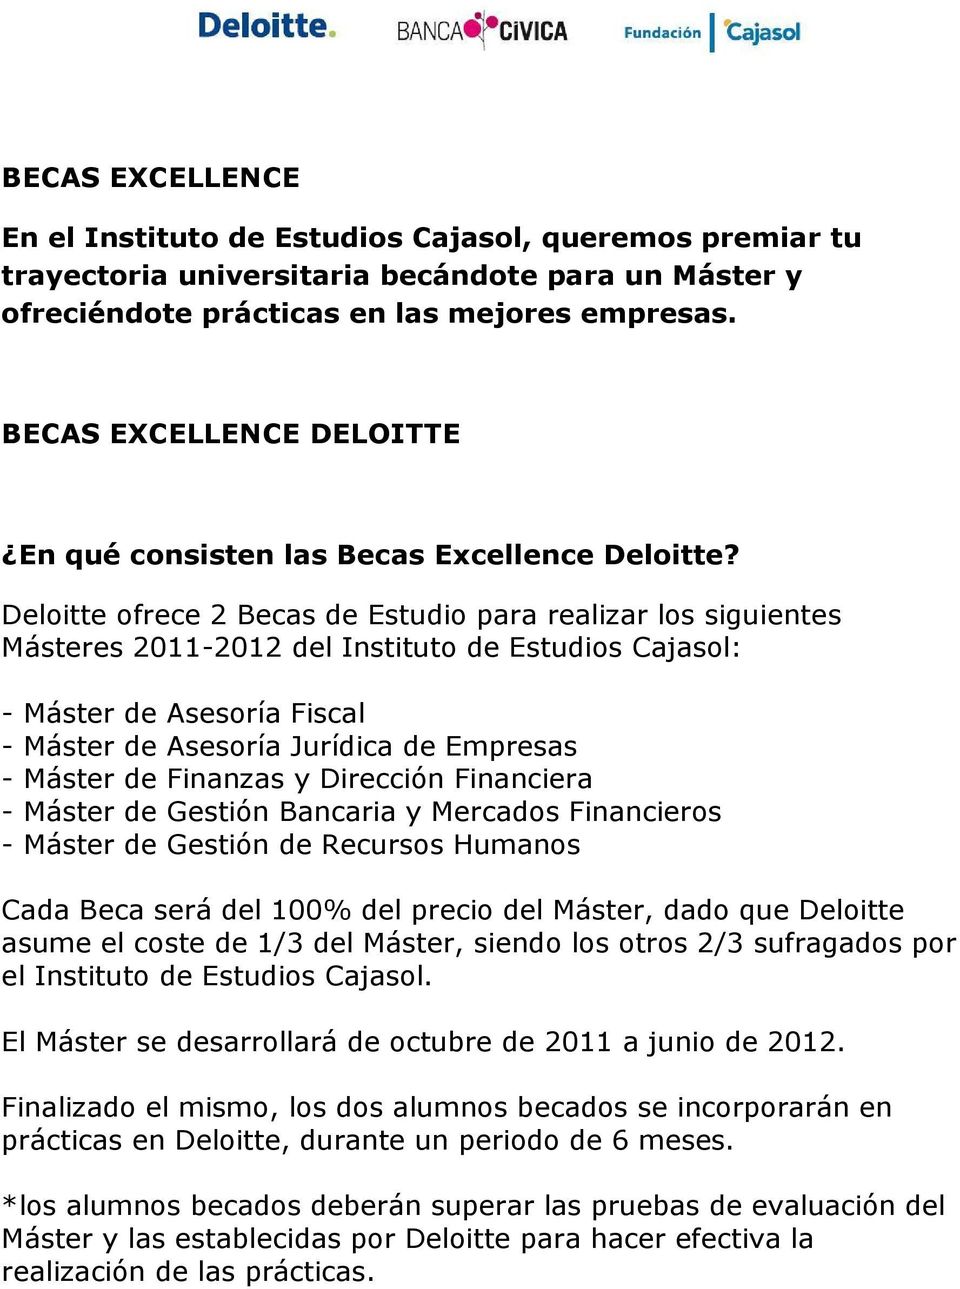 Deloitte ofrece 2 Becas de Estudio para realizar los siguientes Másteres 2011-2012 del Instituto de Estudios Cajasol: - Máster de Asesoría Fiscal - Máster de Asesoría Jurídica de Empresas - Máster de